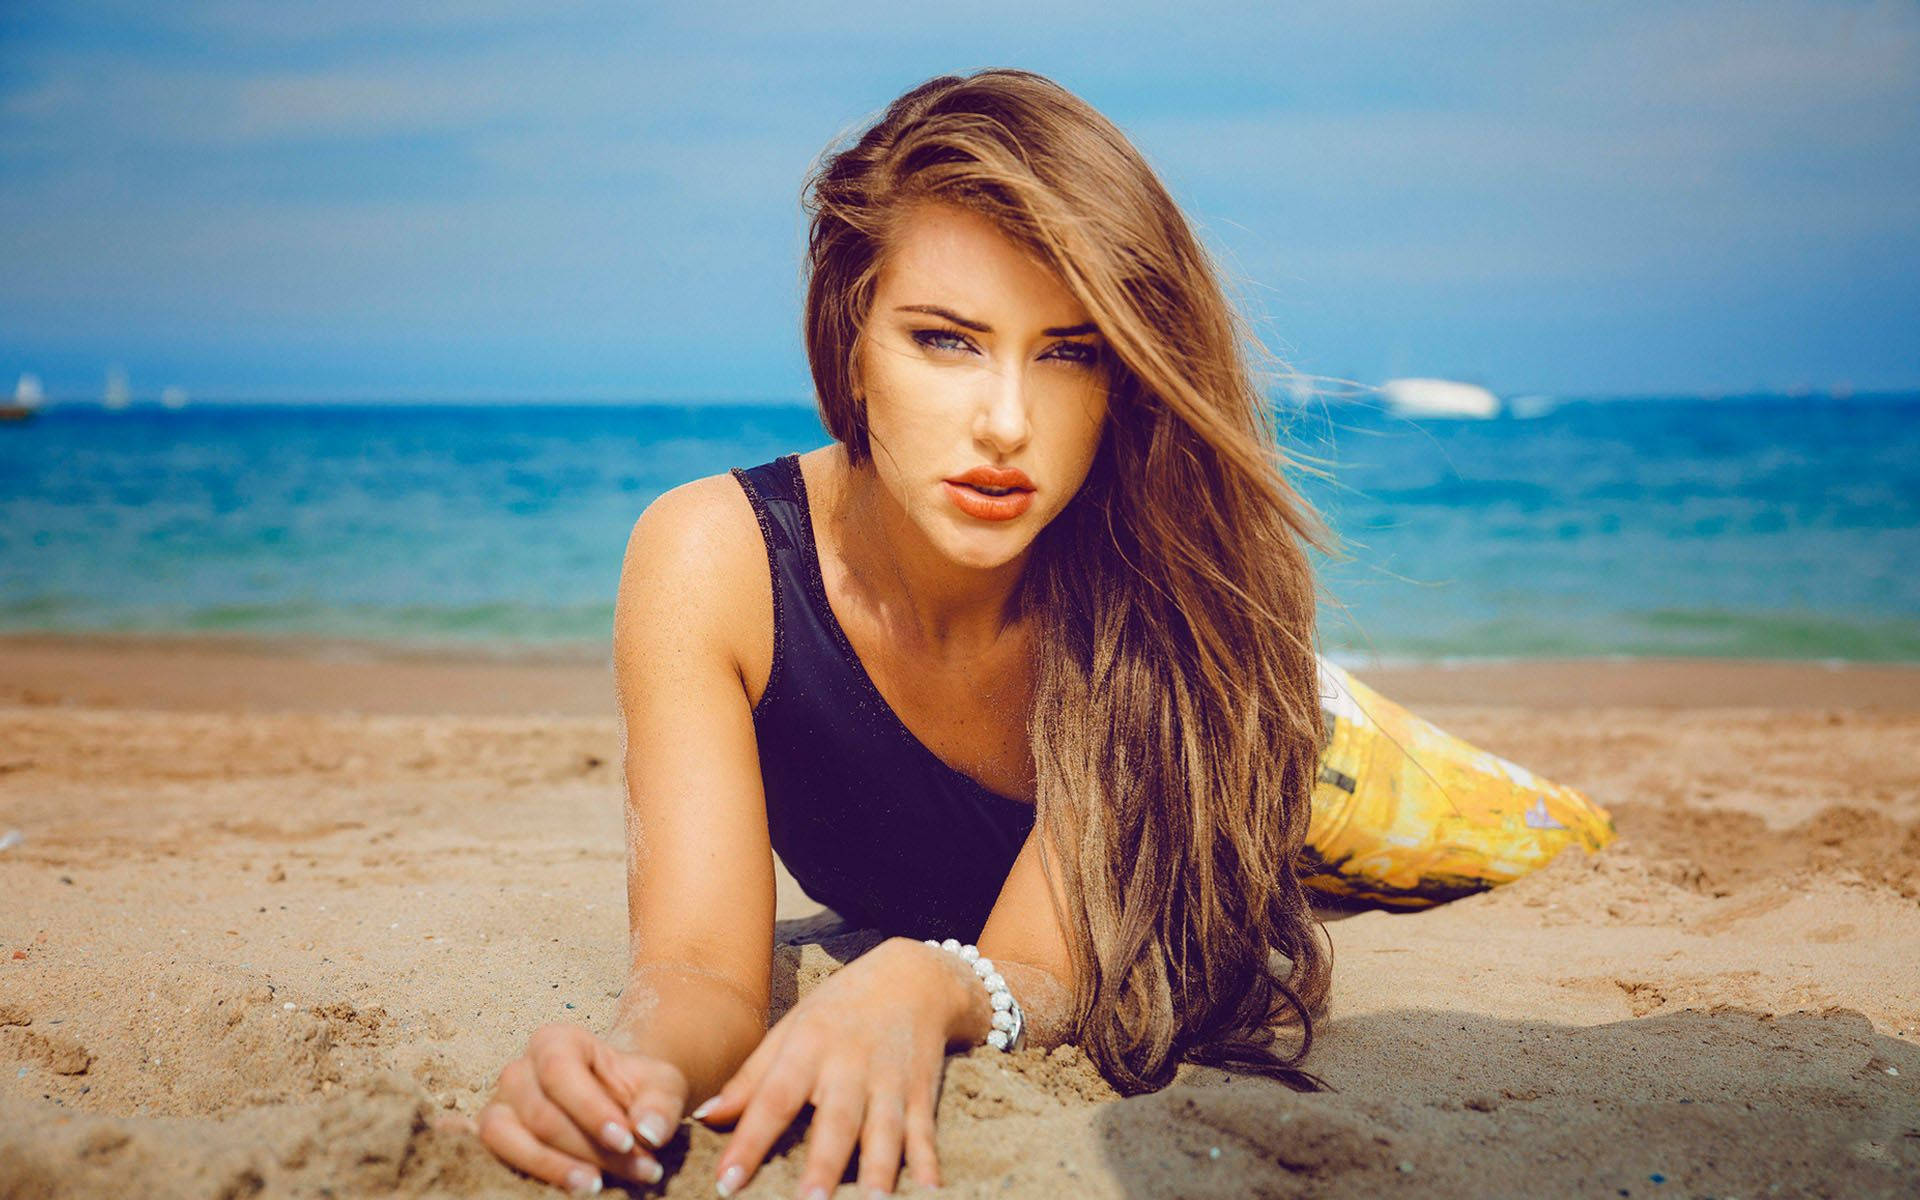 Beautiful Woman On Beach Background